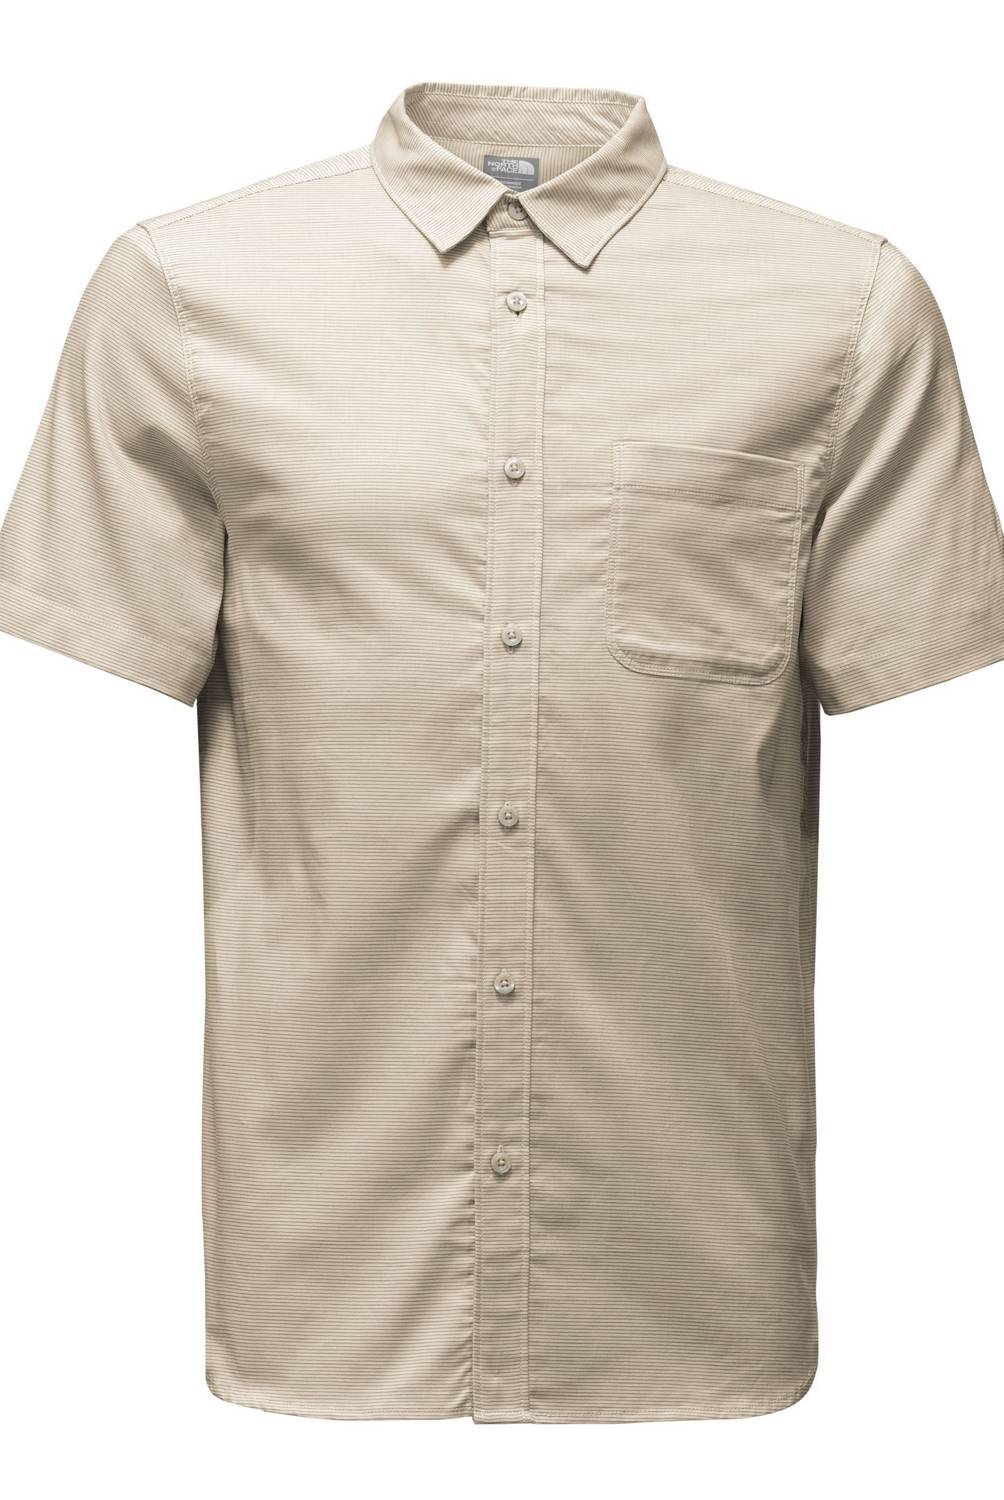 North Face - Camisa On Sight Shirt